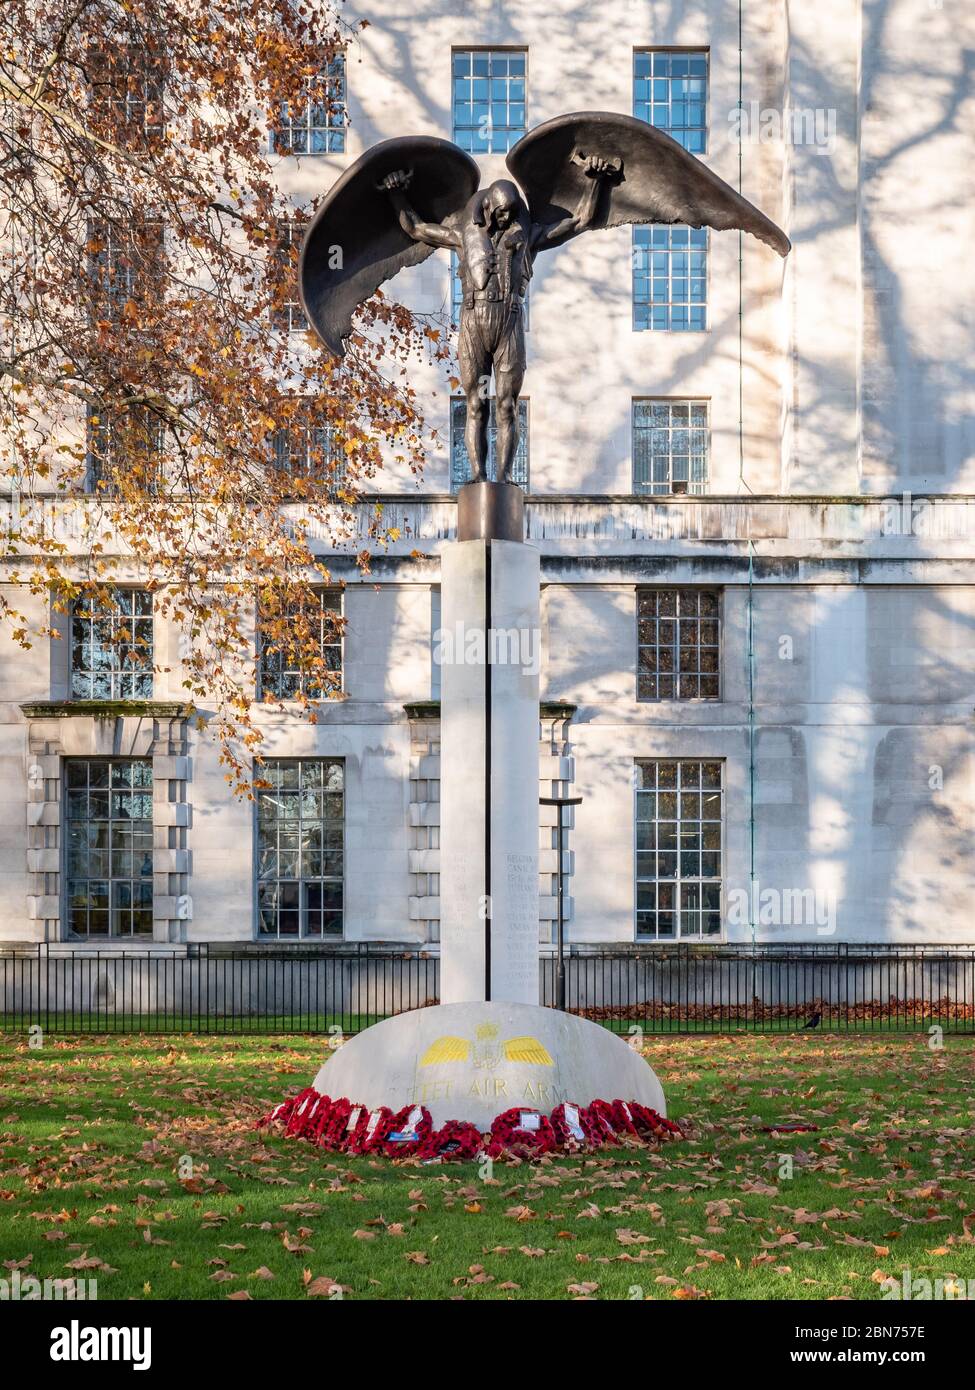 Le mémorial de la flotte Air Arm, Daedalus, par le ministère de la Défense, Whitehall, Londres. Hommage au Royal Naval Air Service et au Fleet Air Arm du Royaume-Uni. Banque D'Images